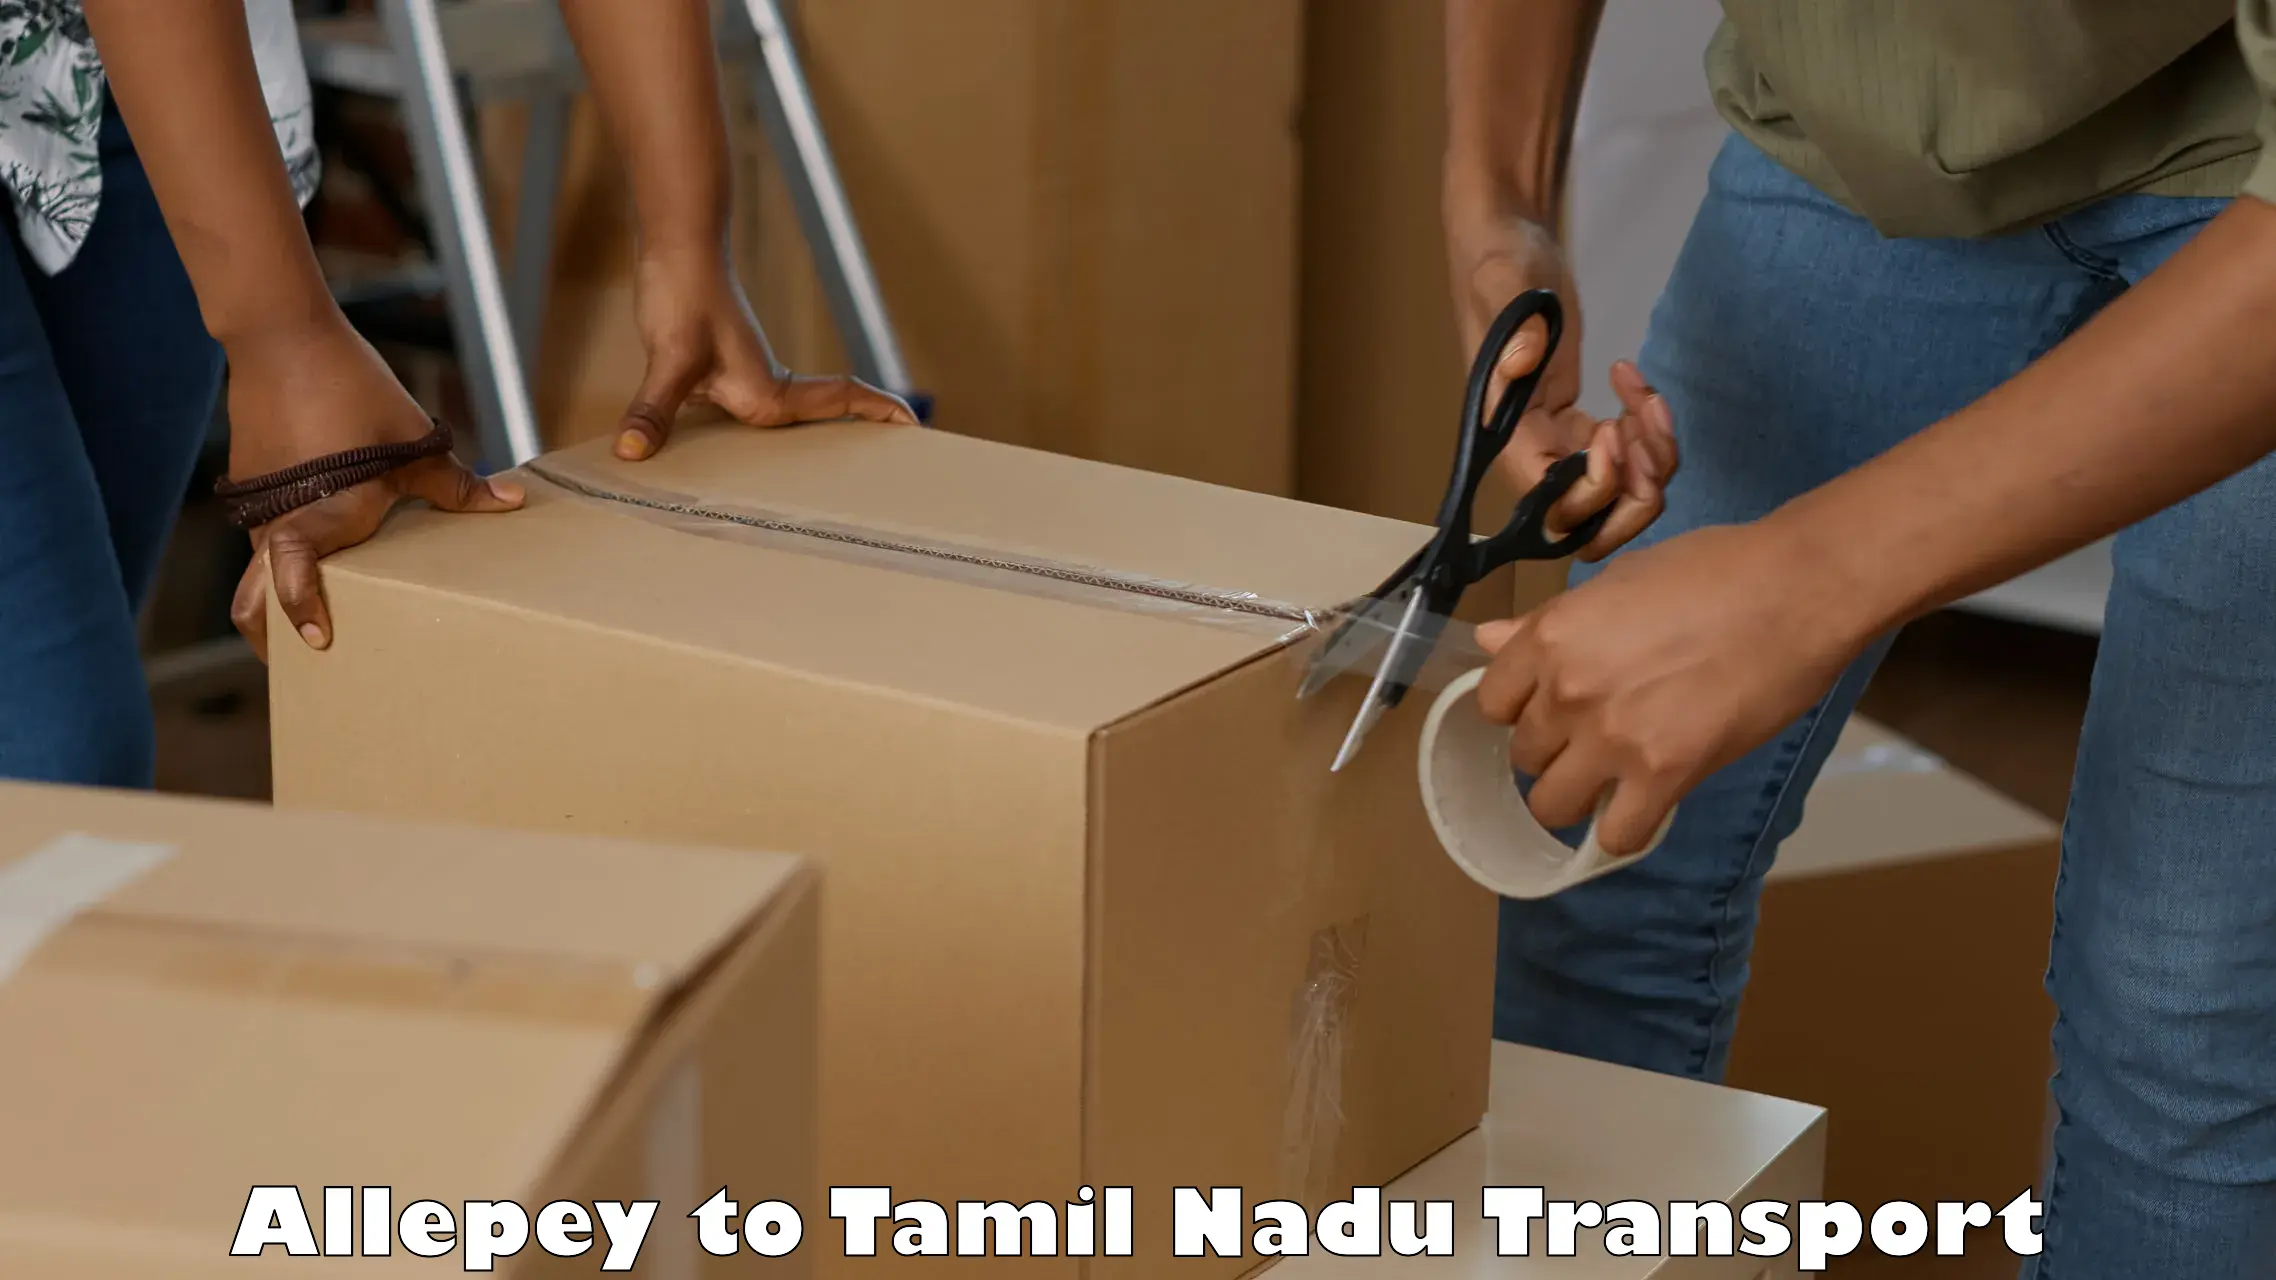 Nearest transport service Allepey to Tamil Nadu